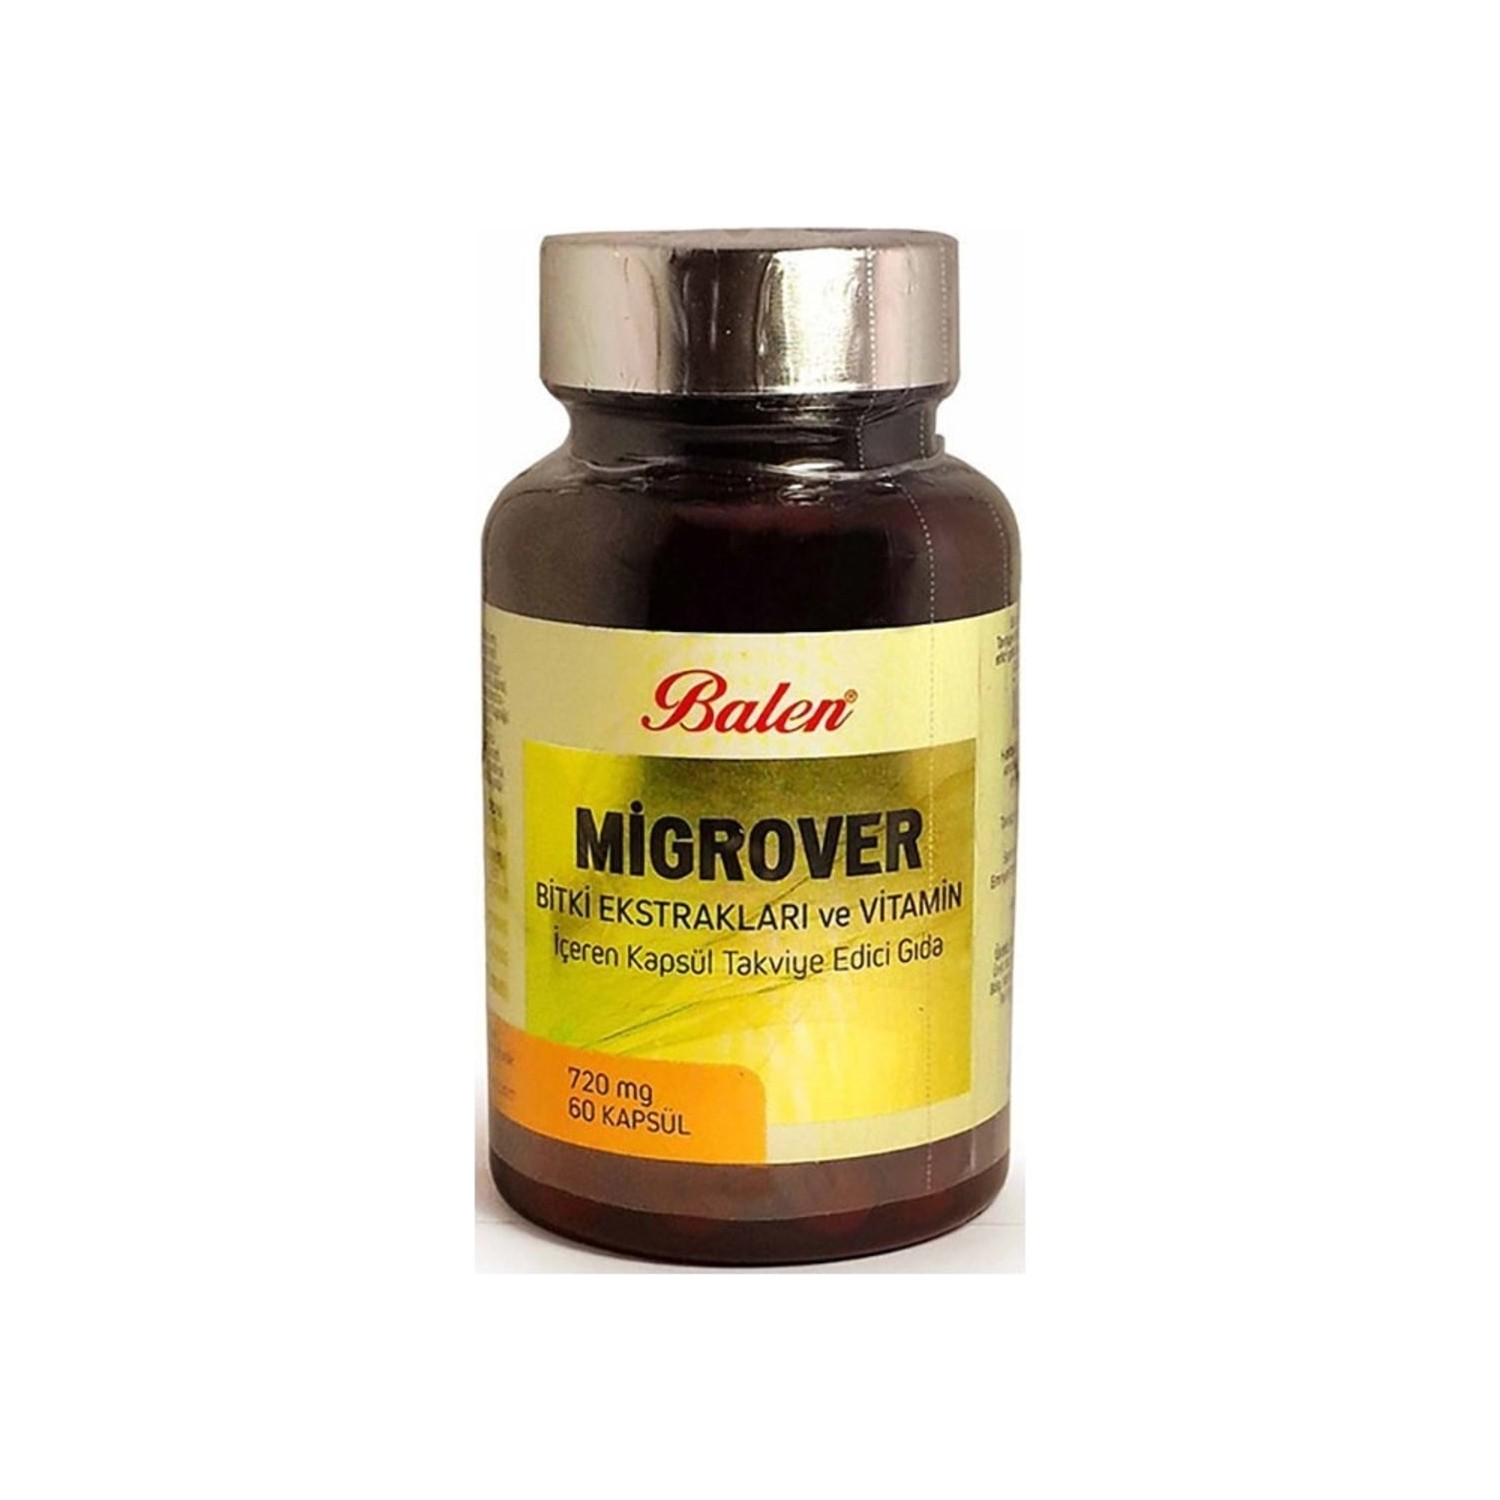 Капсулы Balen Migrover, содержащие растительные экстракты и витамины, 60 капсул, 720 мг premium extract olive leaf 250 mg 60 vegan capsules